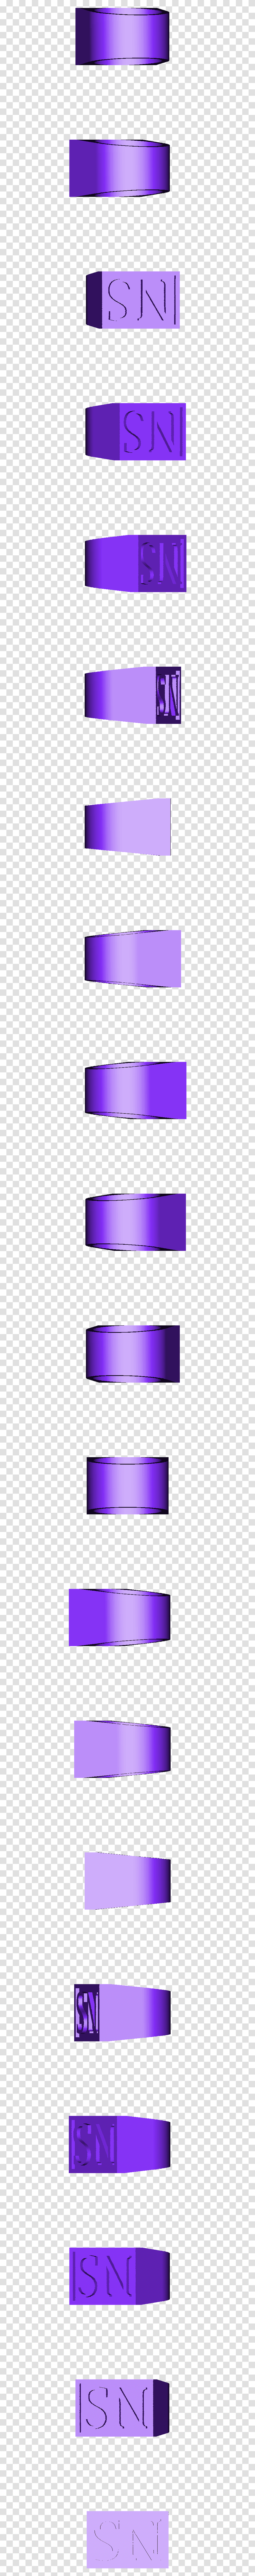 Circle, Cylinder, Pot, Purple, Lamp Transparent Png